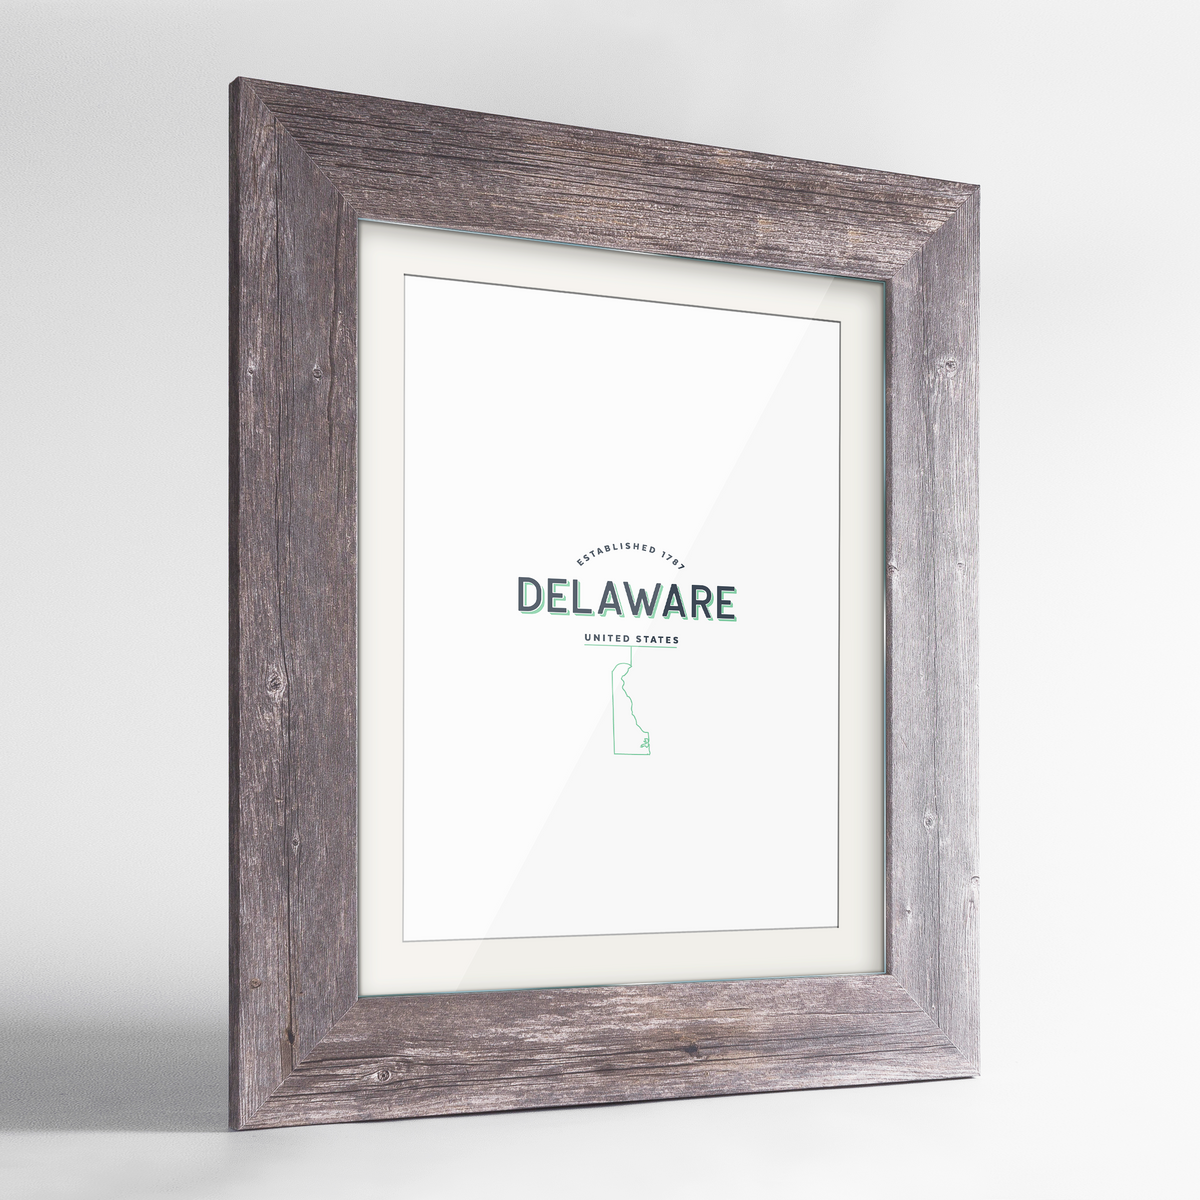 Delaware Word Art Frame Print - State Line